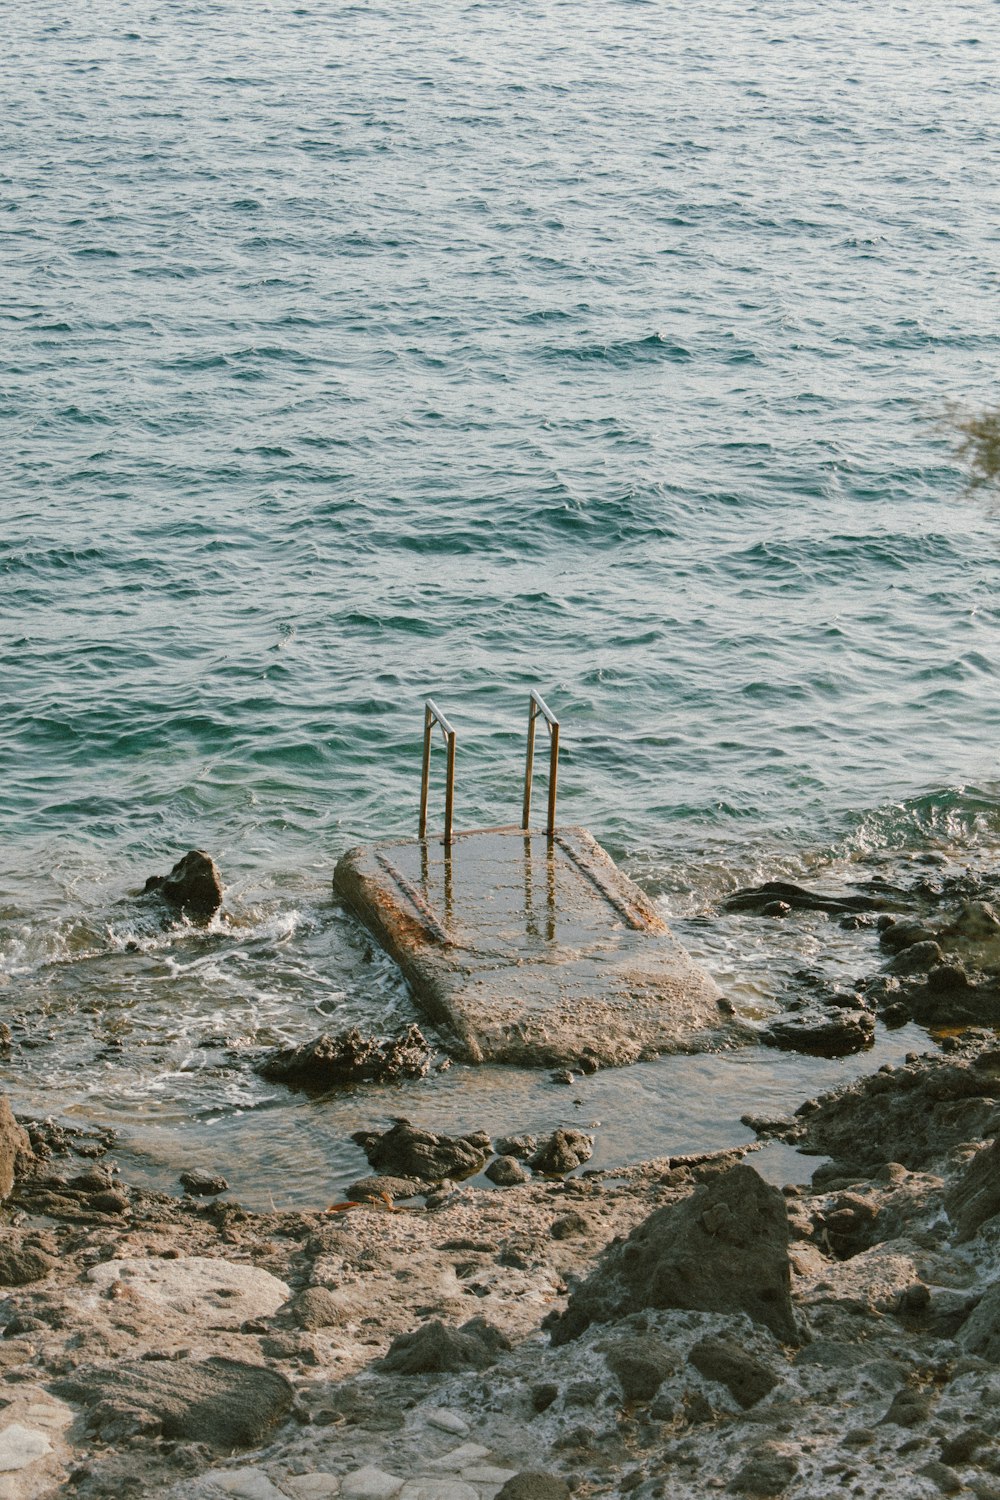 a dock on a rocky beach